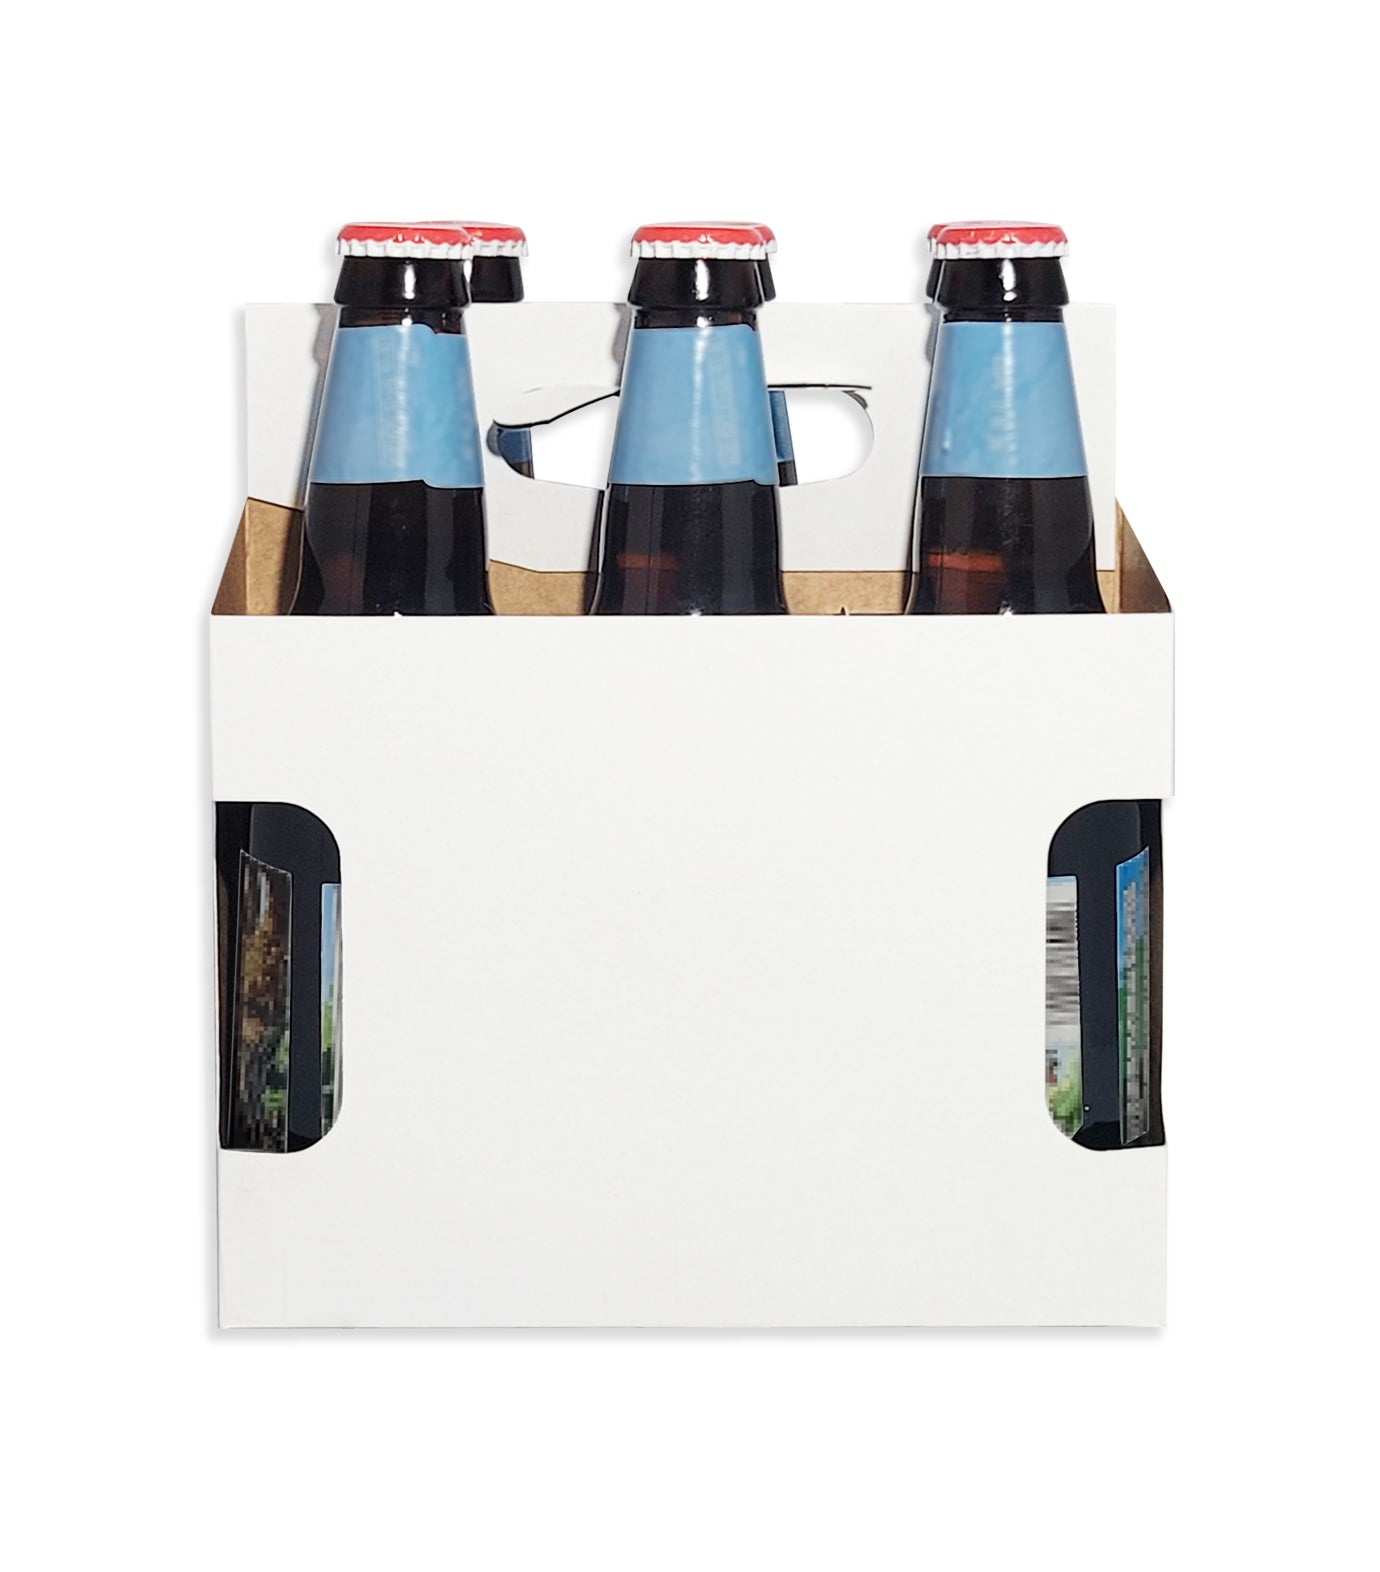 Beer Bottle 6 Pack Carrier